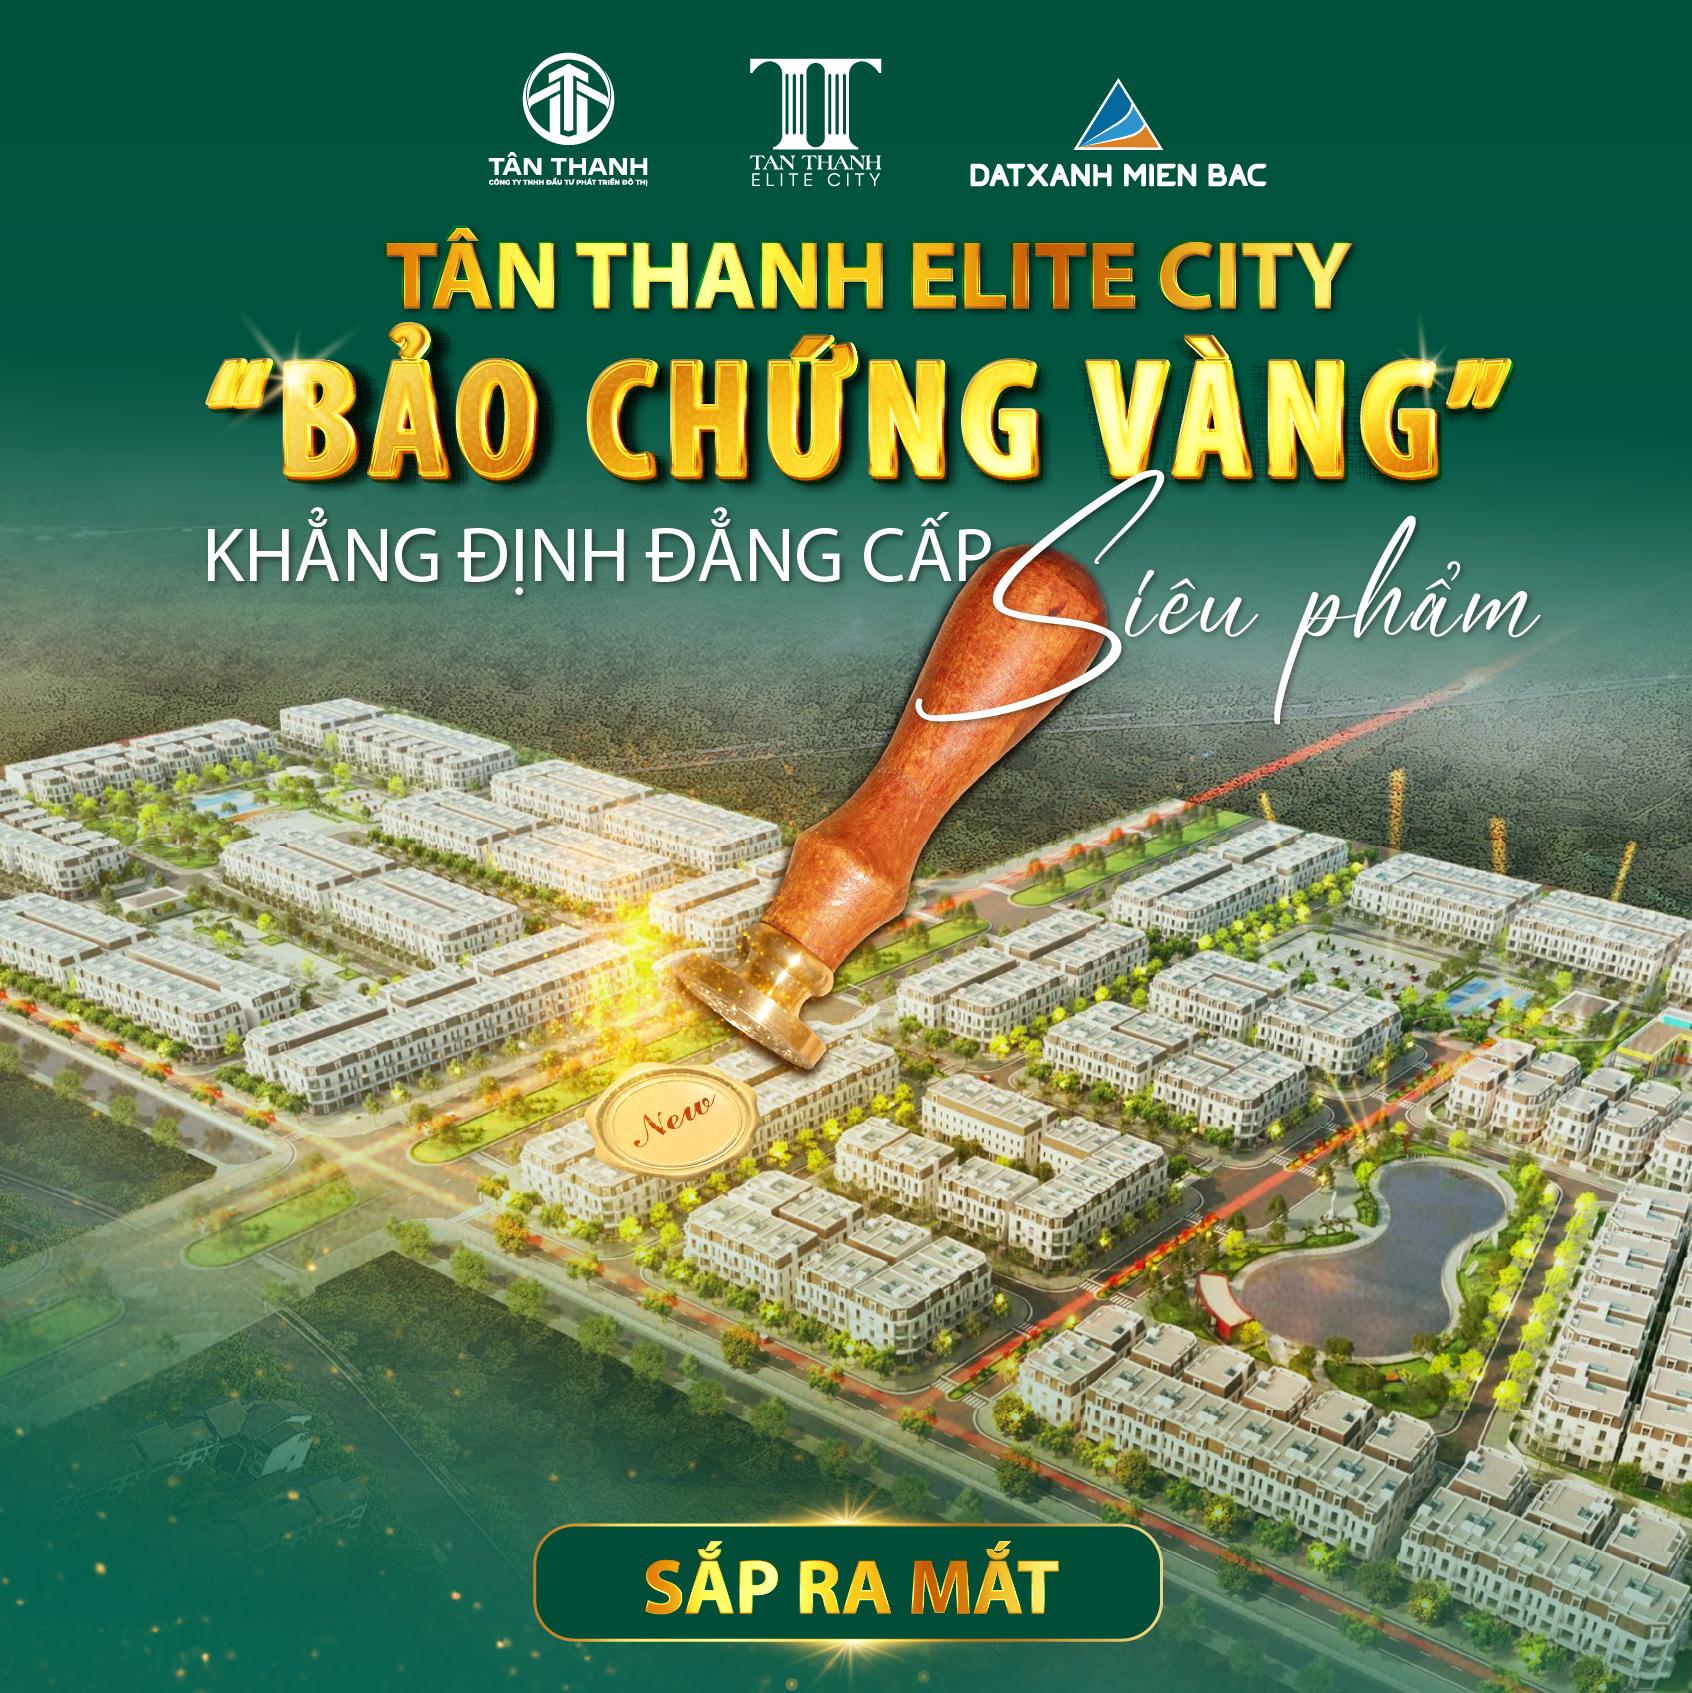 Sắp ra mắt khu đô thị Tân Thanh Elite City tại phía Nam Hà Nội- Ảnh 1.